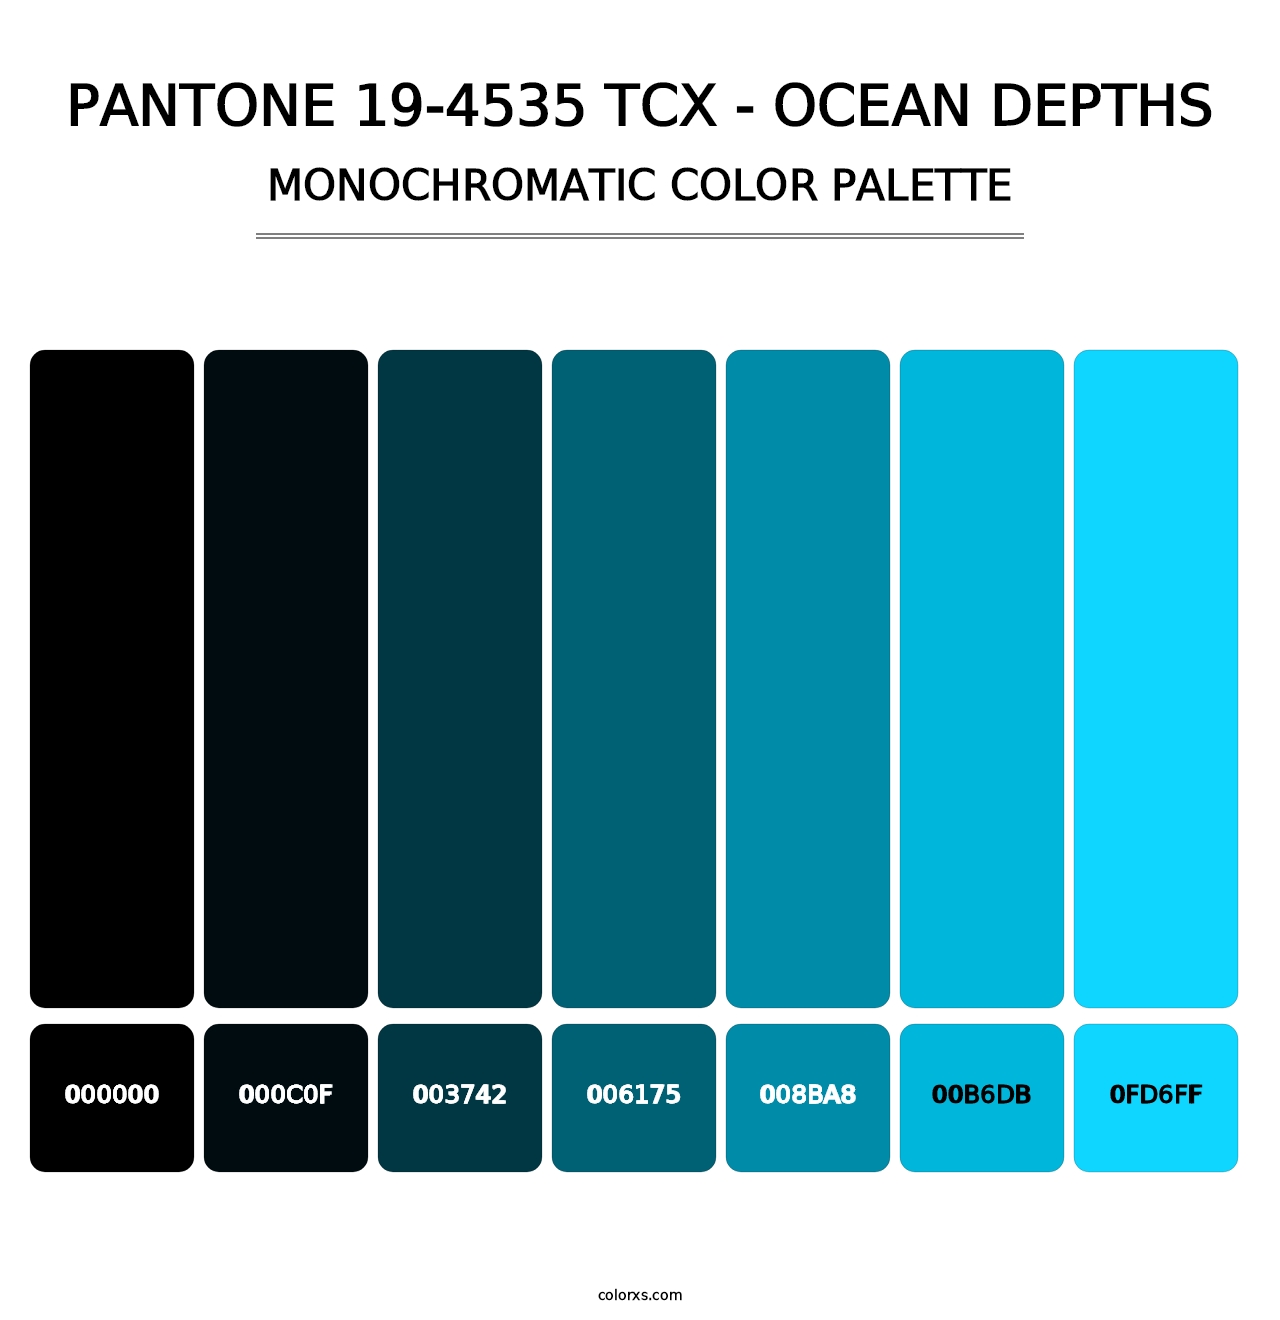 PANTONE 19-4535 TCX - Ocean Depths - Monochromatic Color Palette